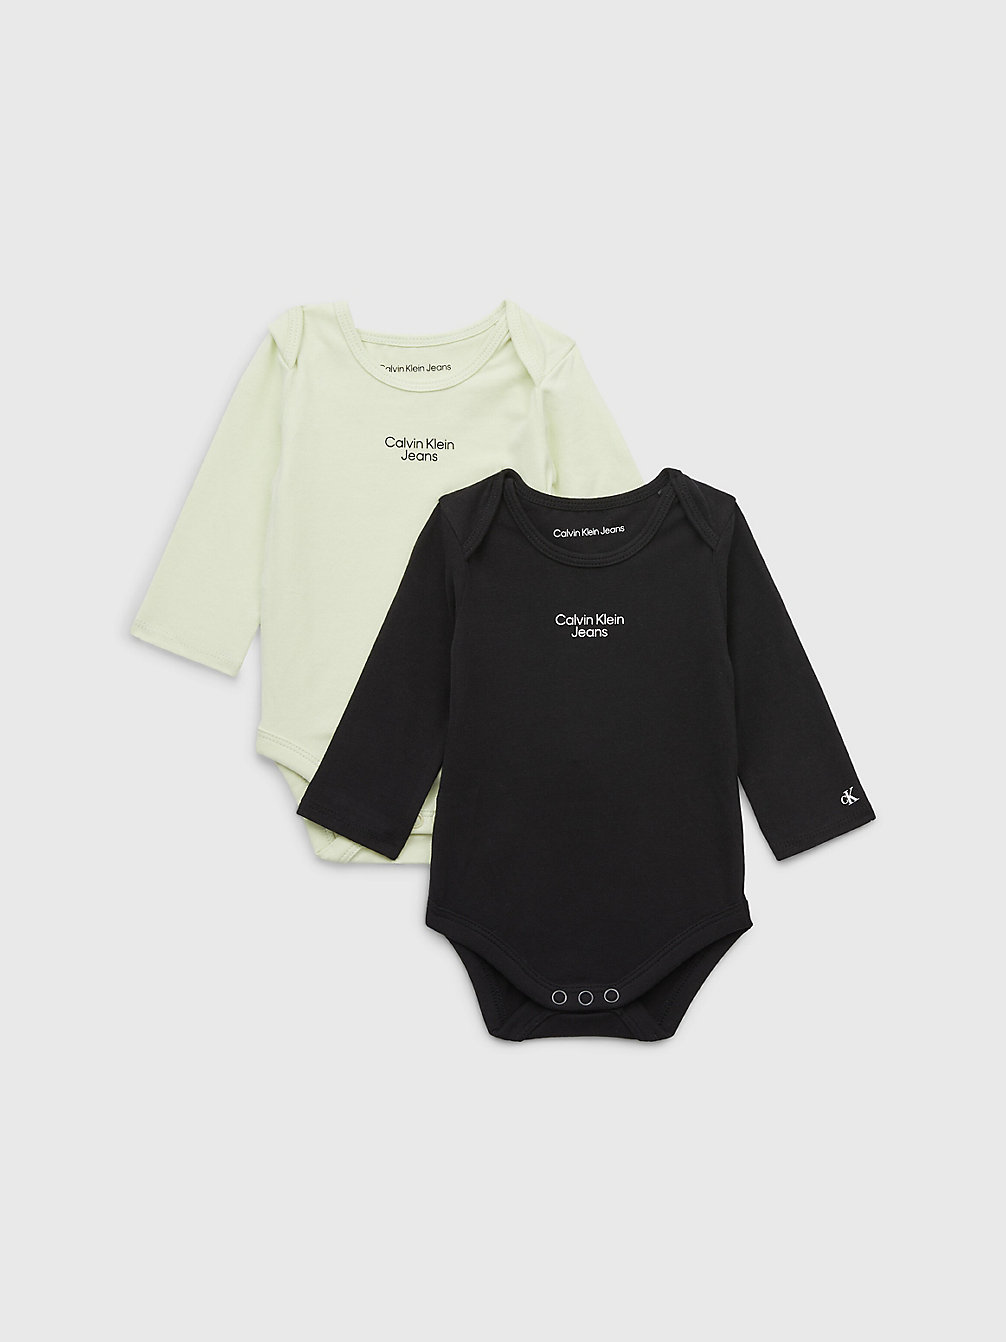 SEAFOAM GREEN/ CK BLACK 2-Pack Newborn Bodysuit undefined newborn Calvin Klein